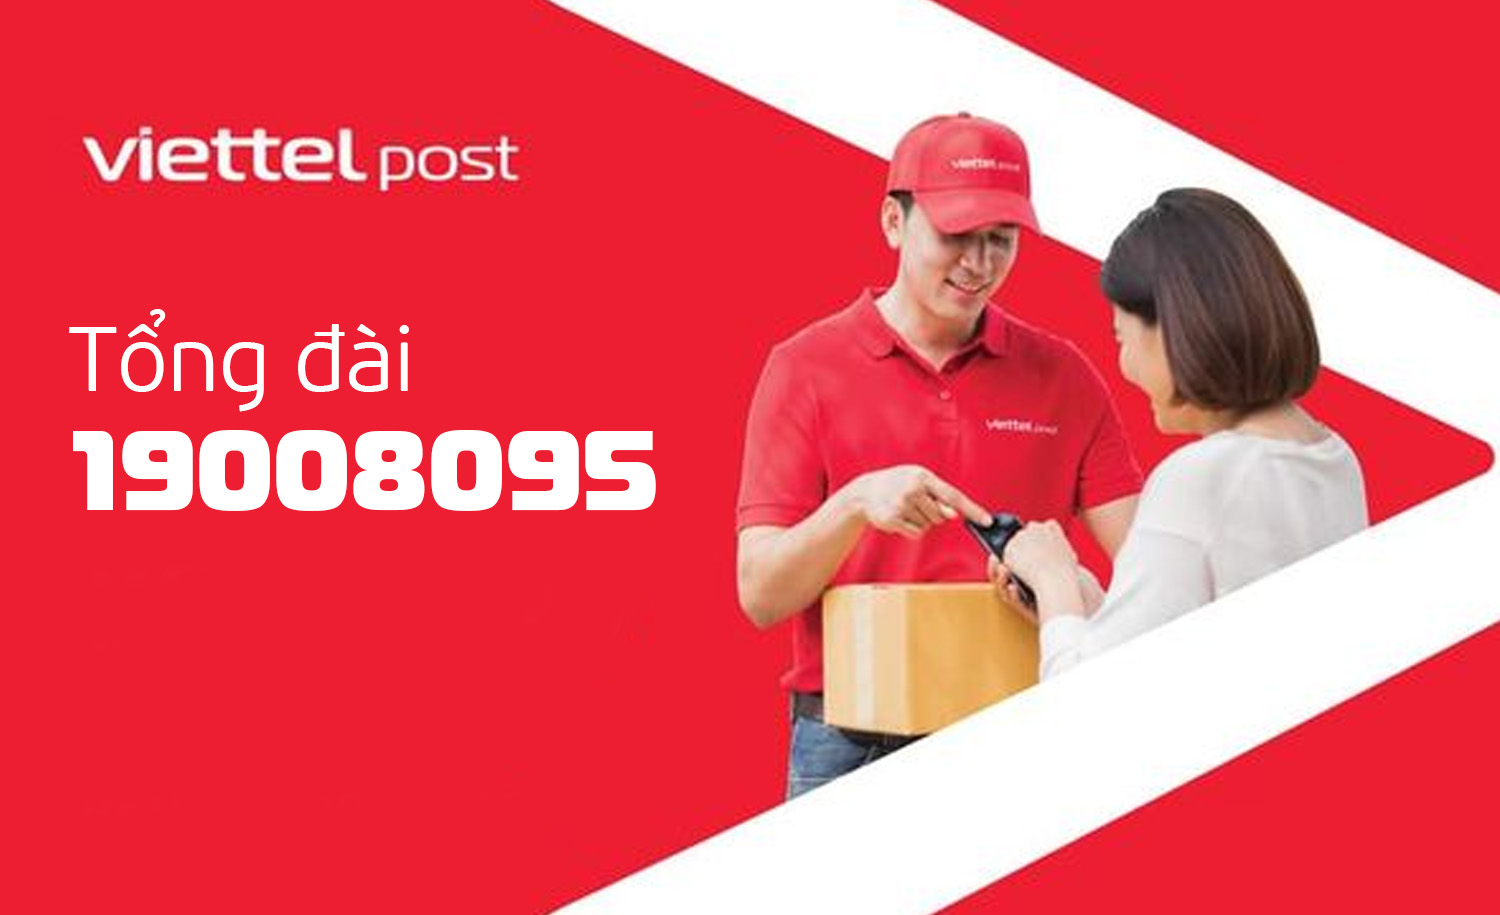 Số điện thoại tổng đài Viettel Post - hotline của tổng đài Viettel Post là 19008095 - Viettelinternet24h.com